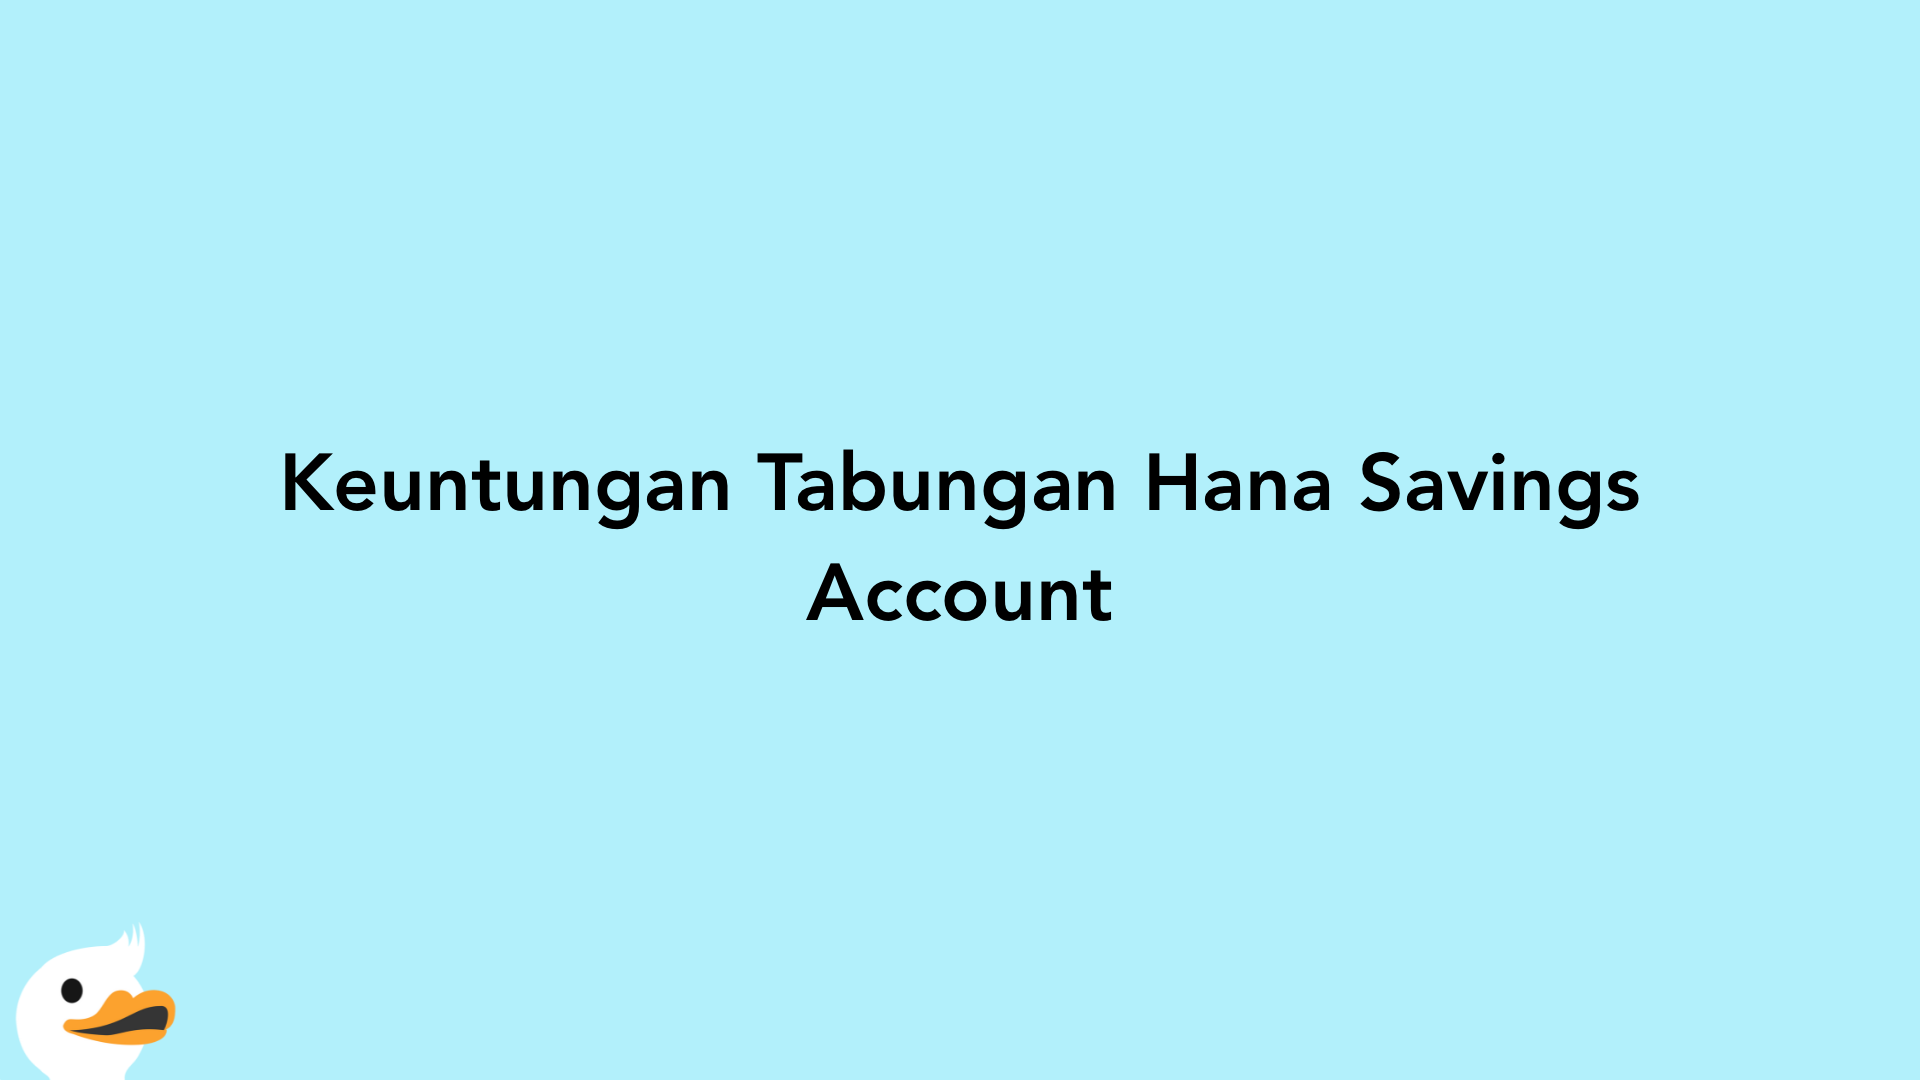 Keuntungan Tabungan Hana Savings Account